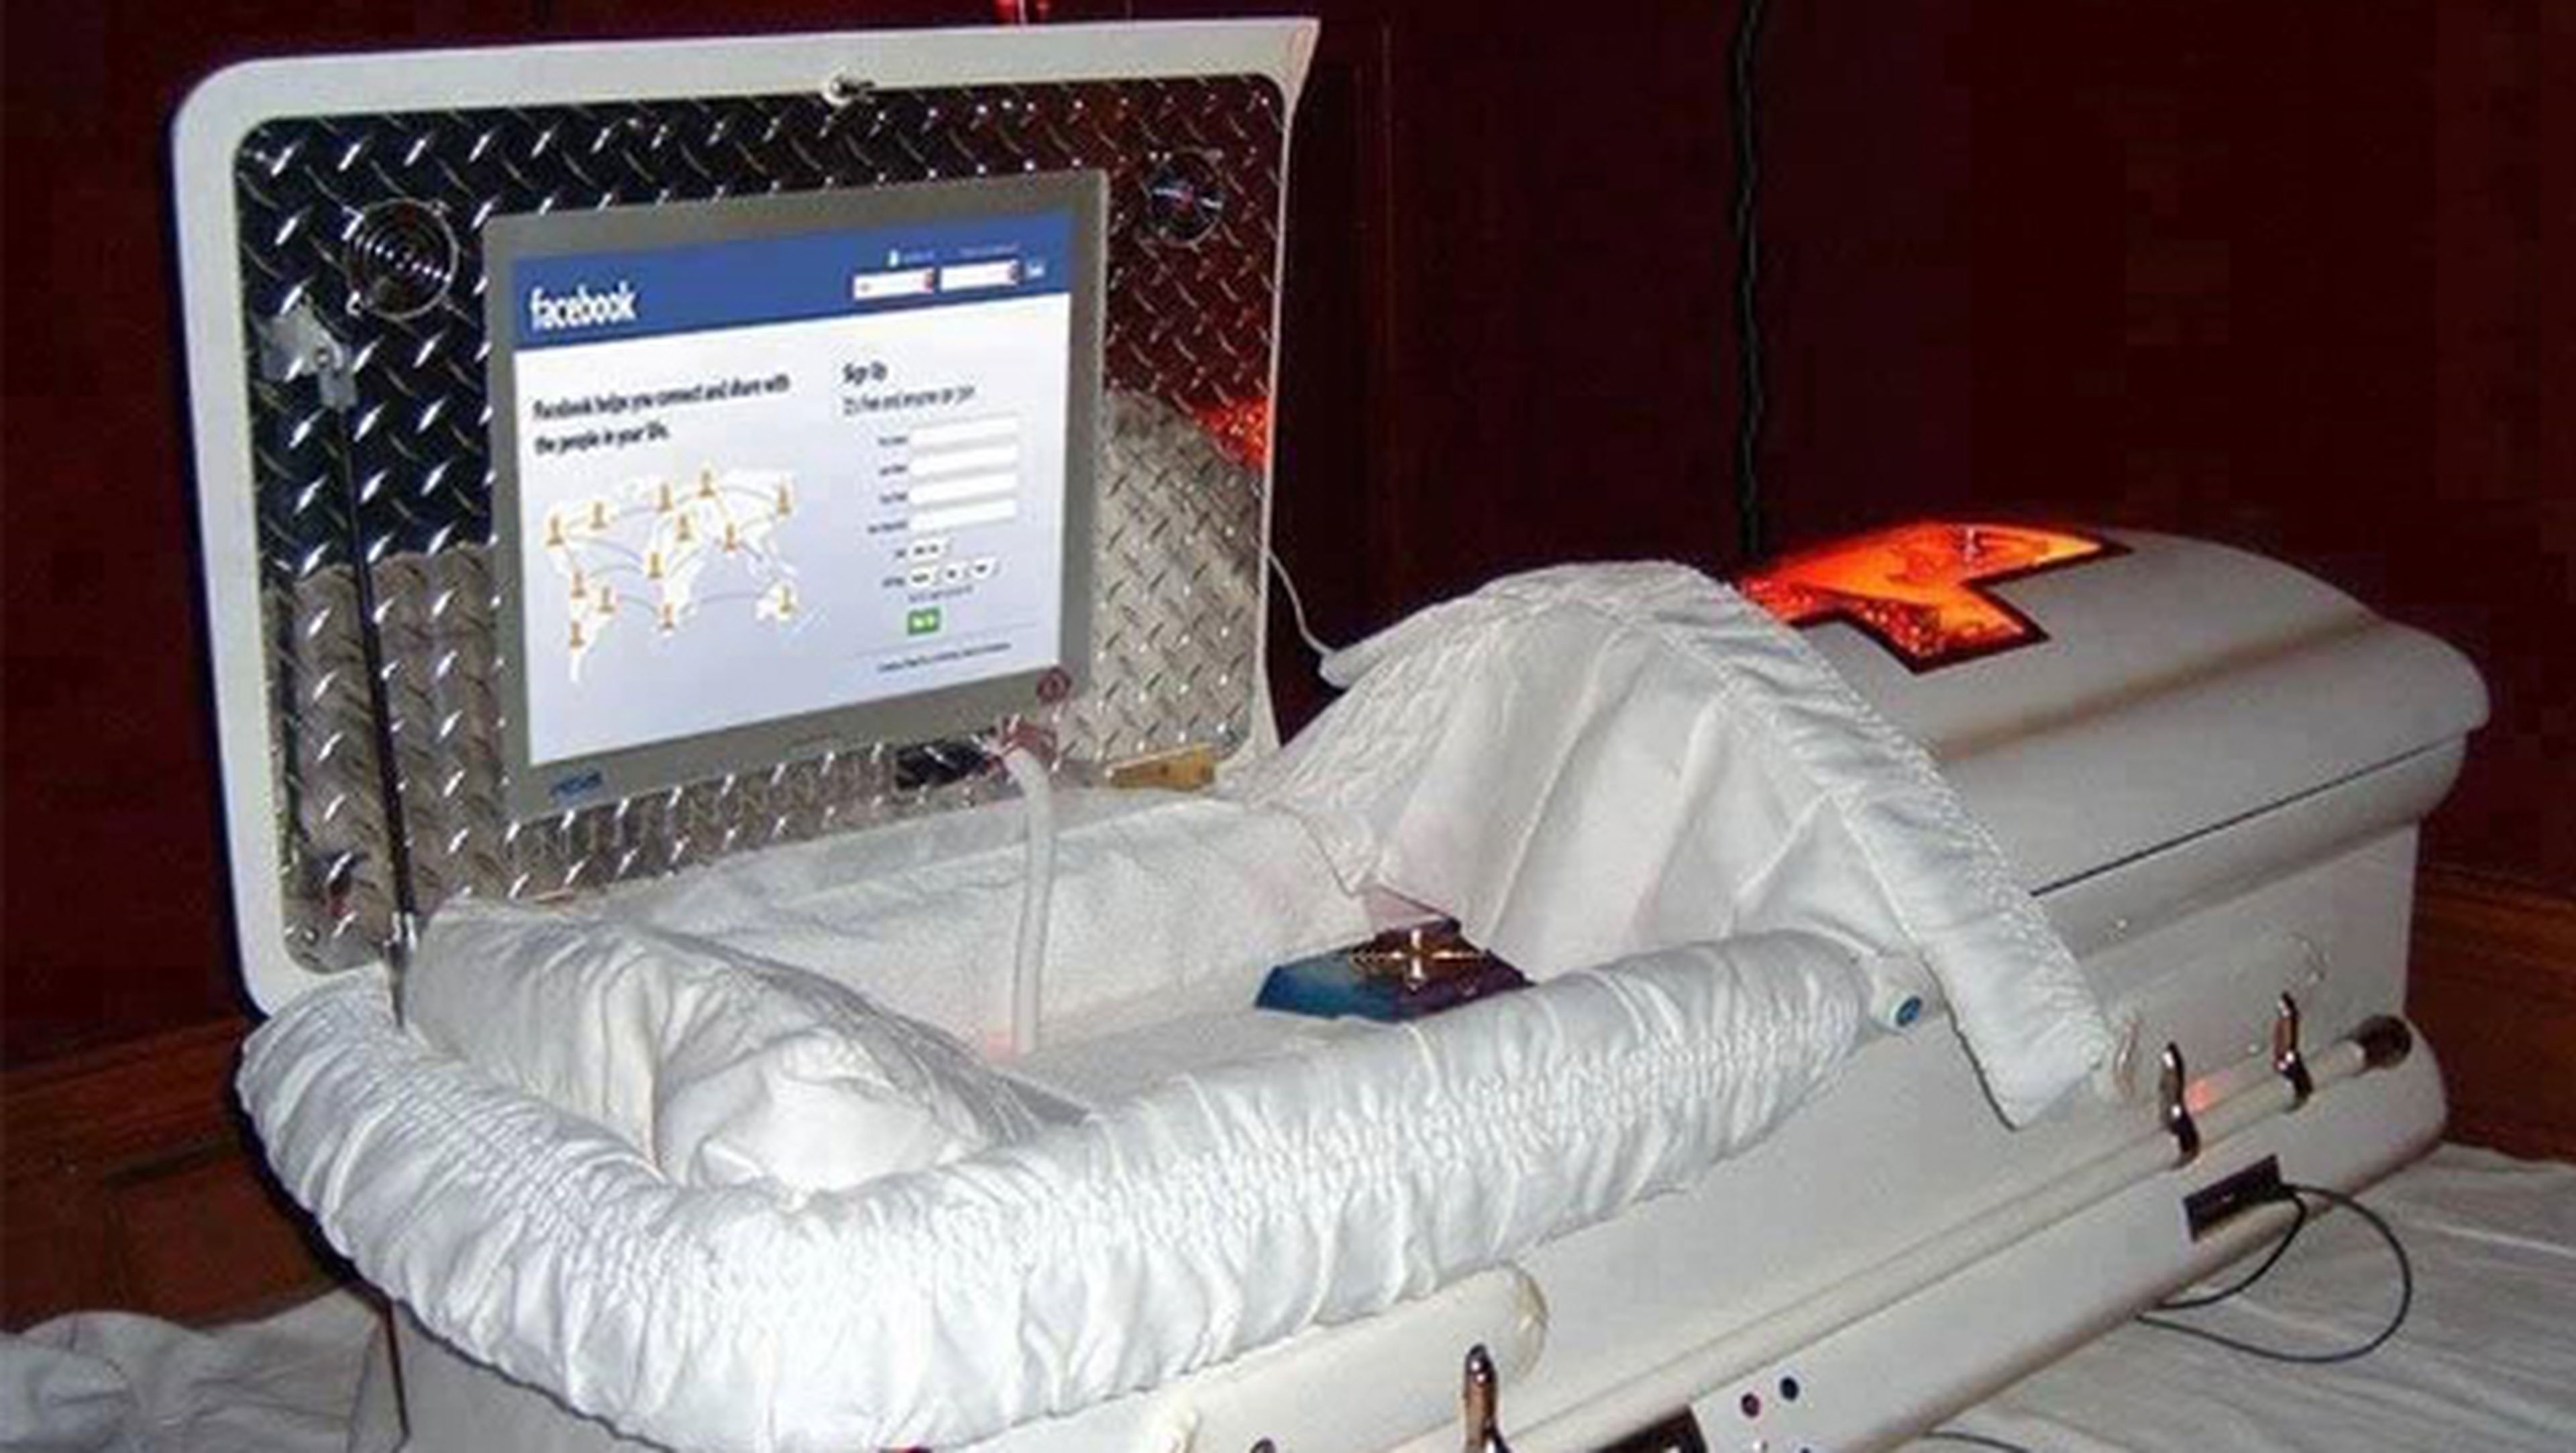 redes sociales tras la muerte